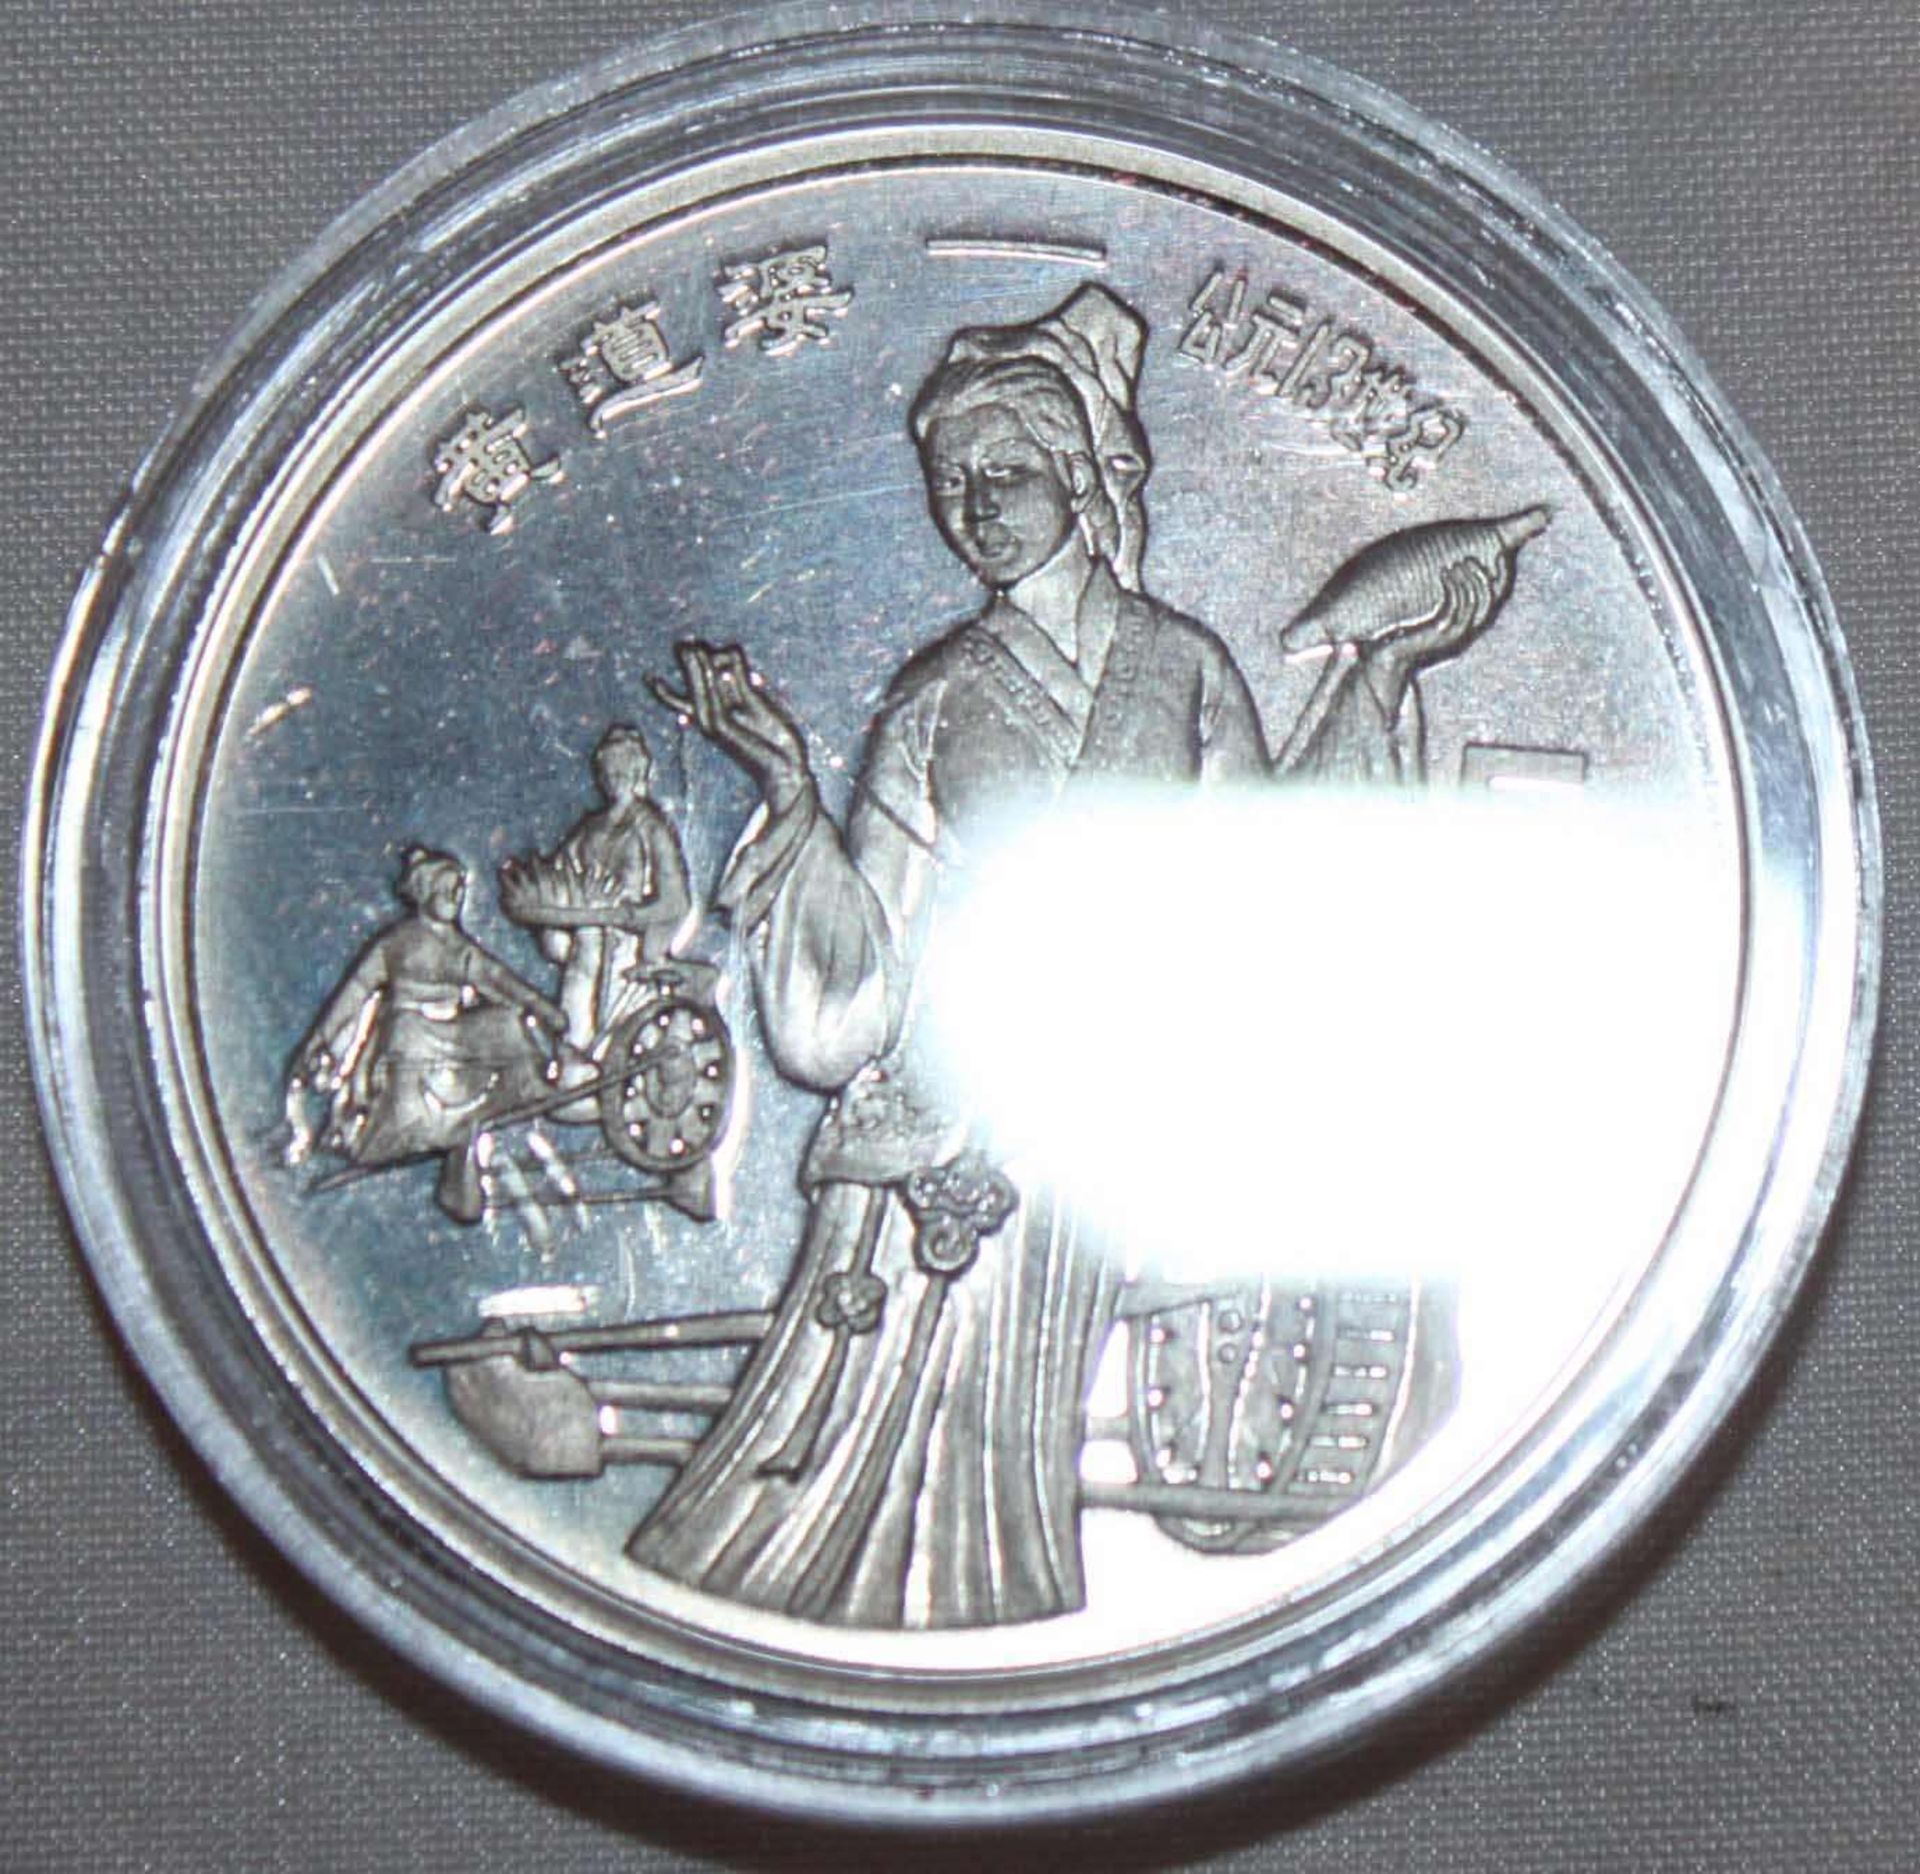 China 1989, 5 Yuan - Silbermünze "Huan Dao Po". Silber 900. Gewicht: 22,2 gr.. In Kapsel. Erhaltung: